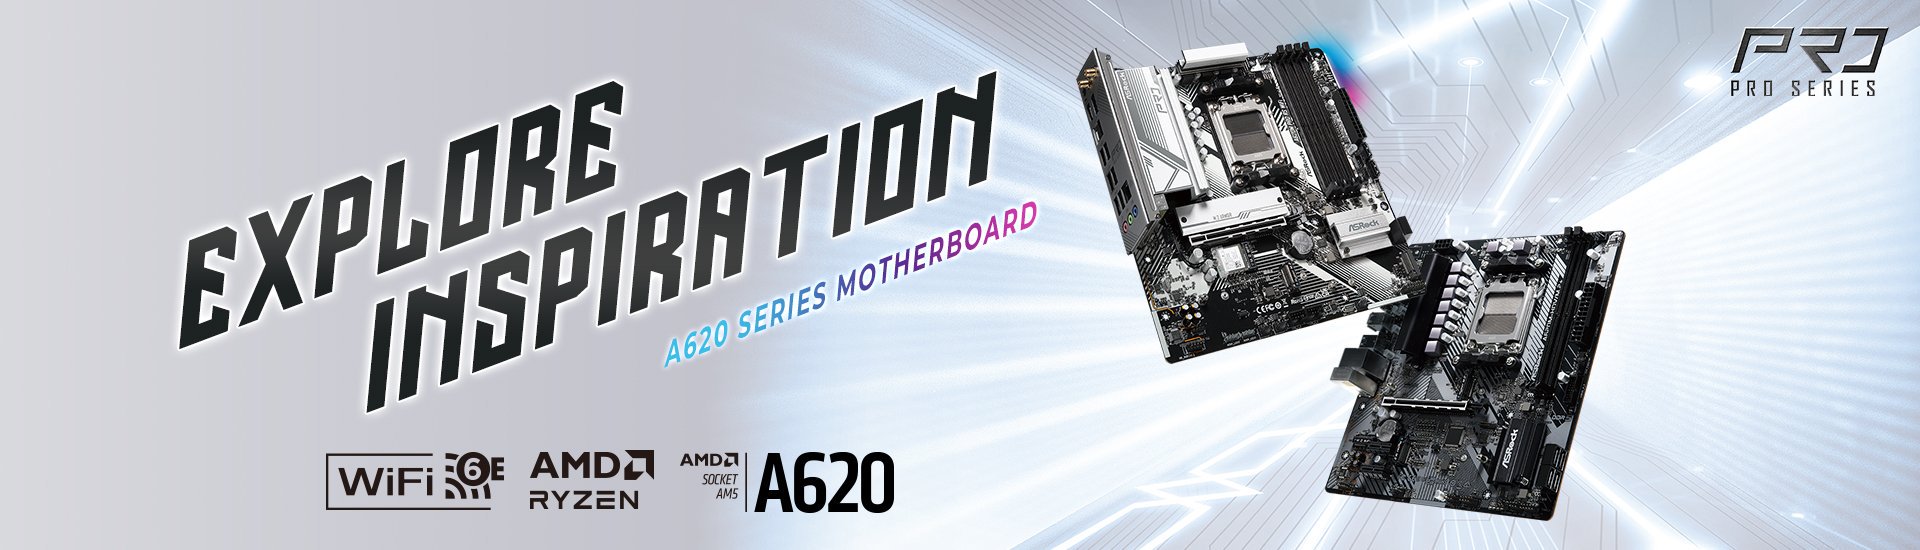 AMD A620 Launch